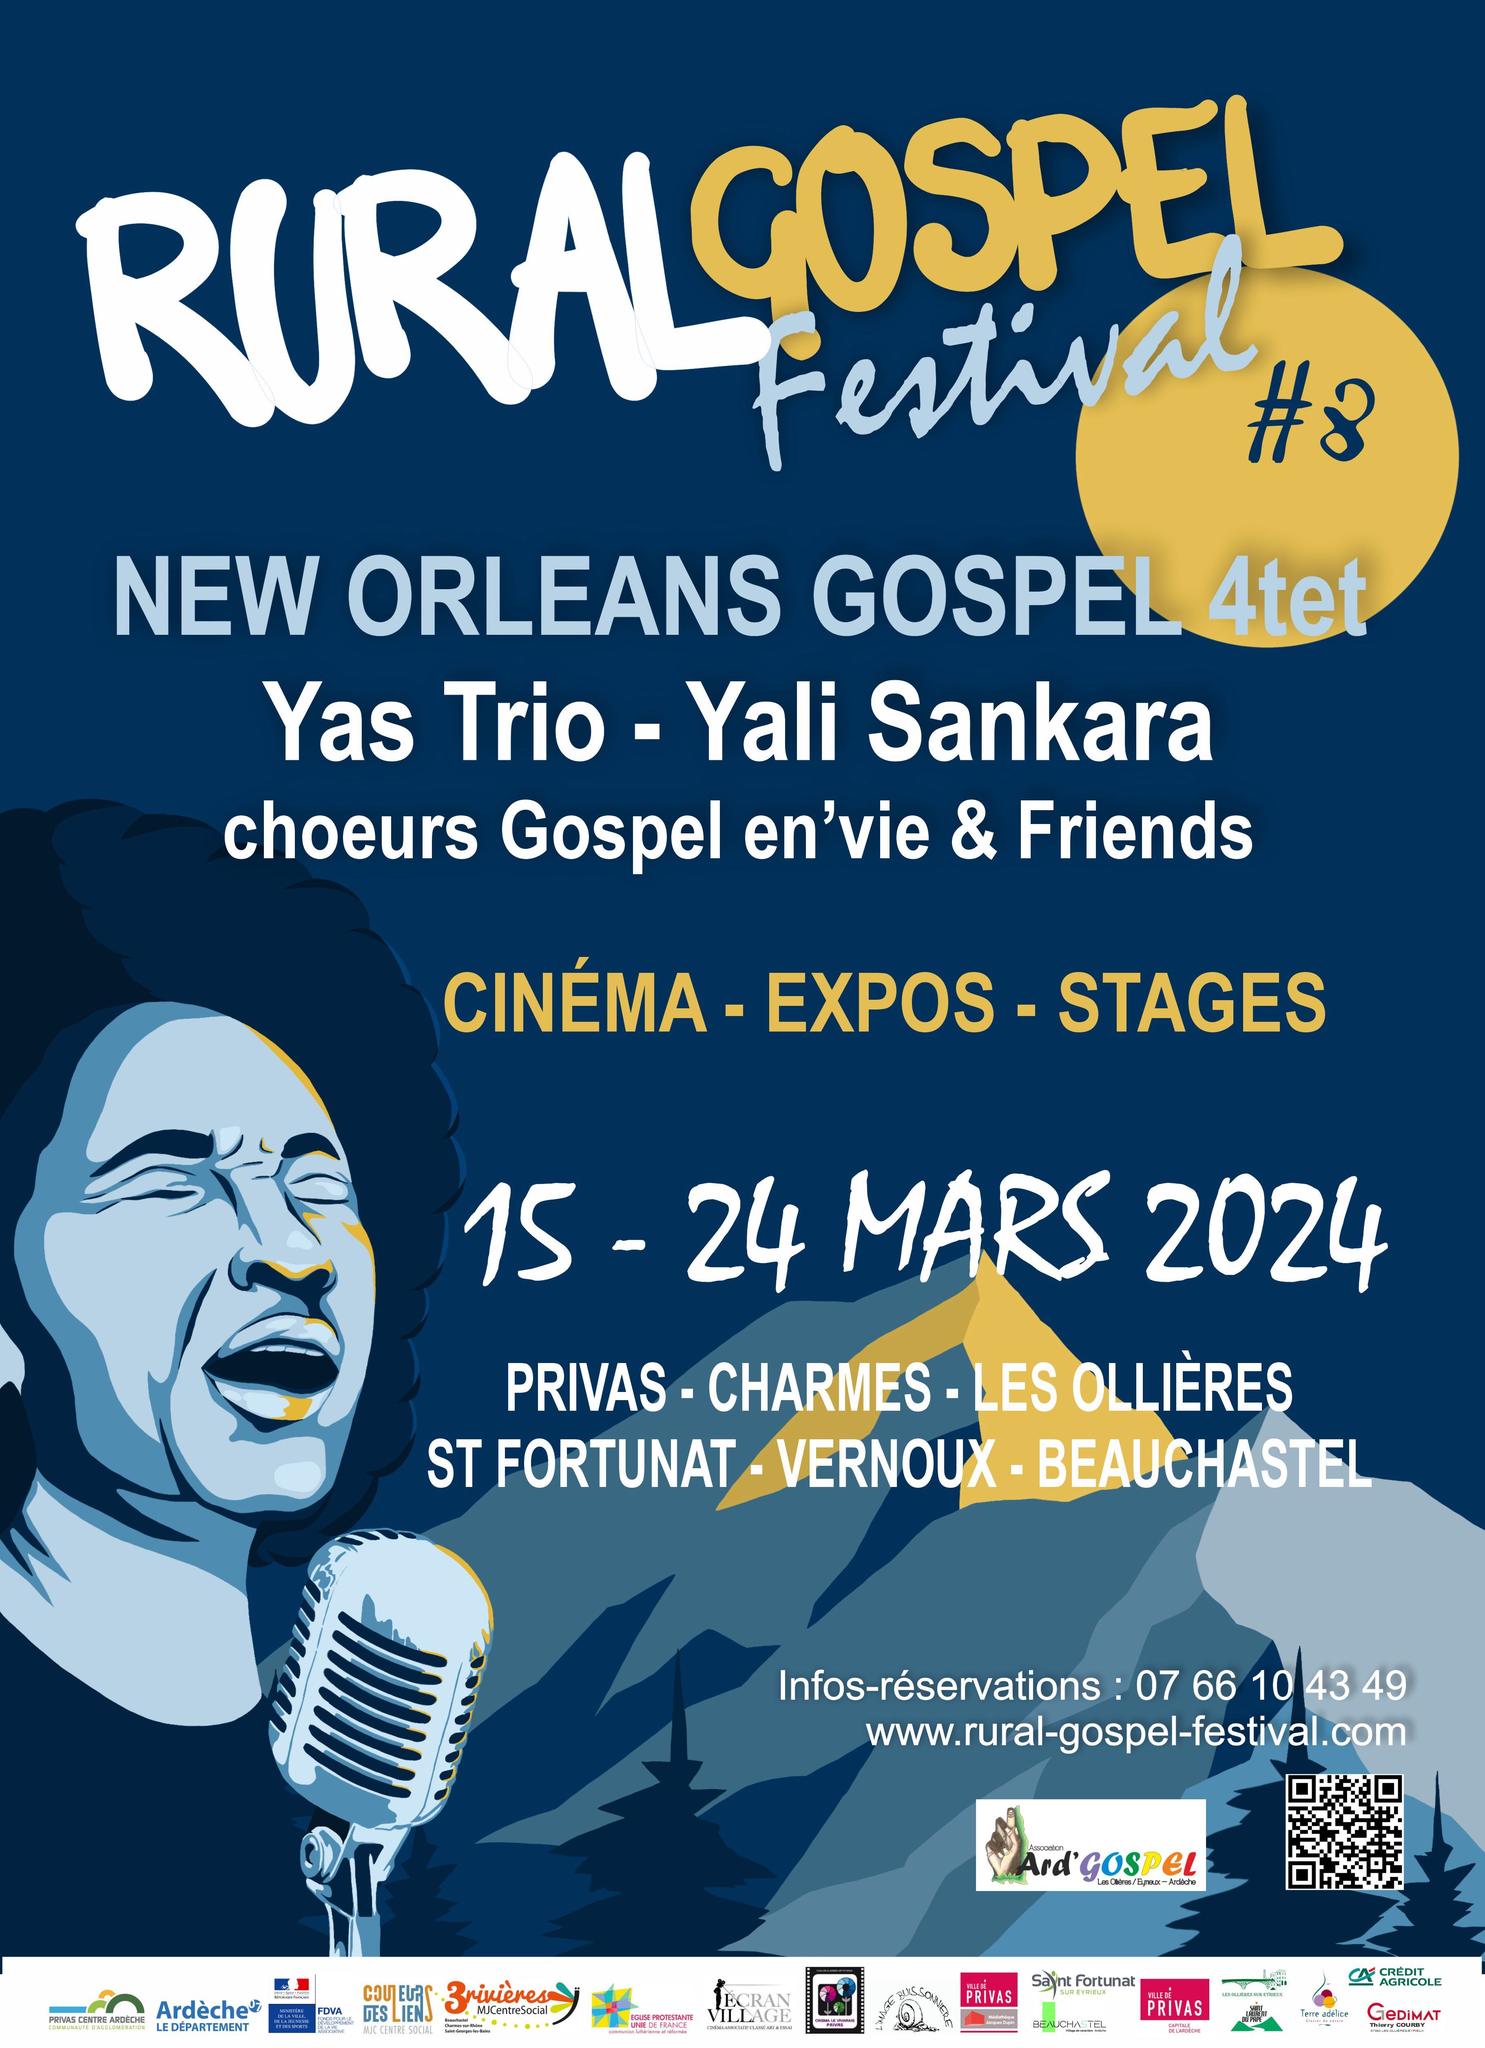 Alle leuke evenementen! : Concert de gospel avec The New Orleans Gospel Quartet [Rural Gospel Festival #8]